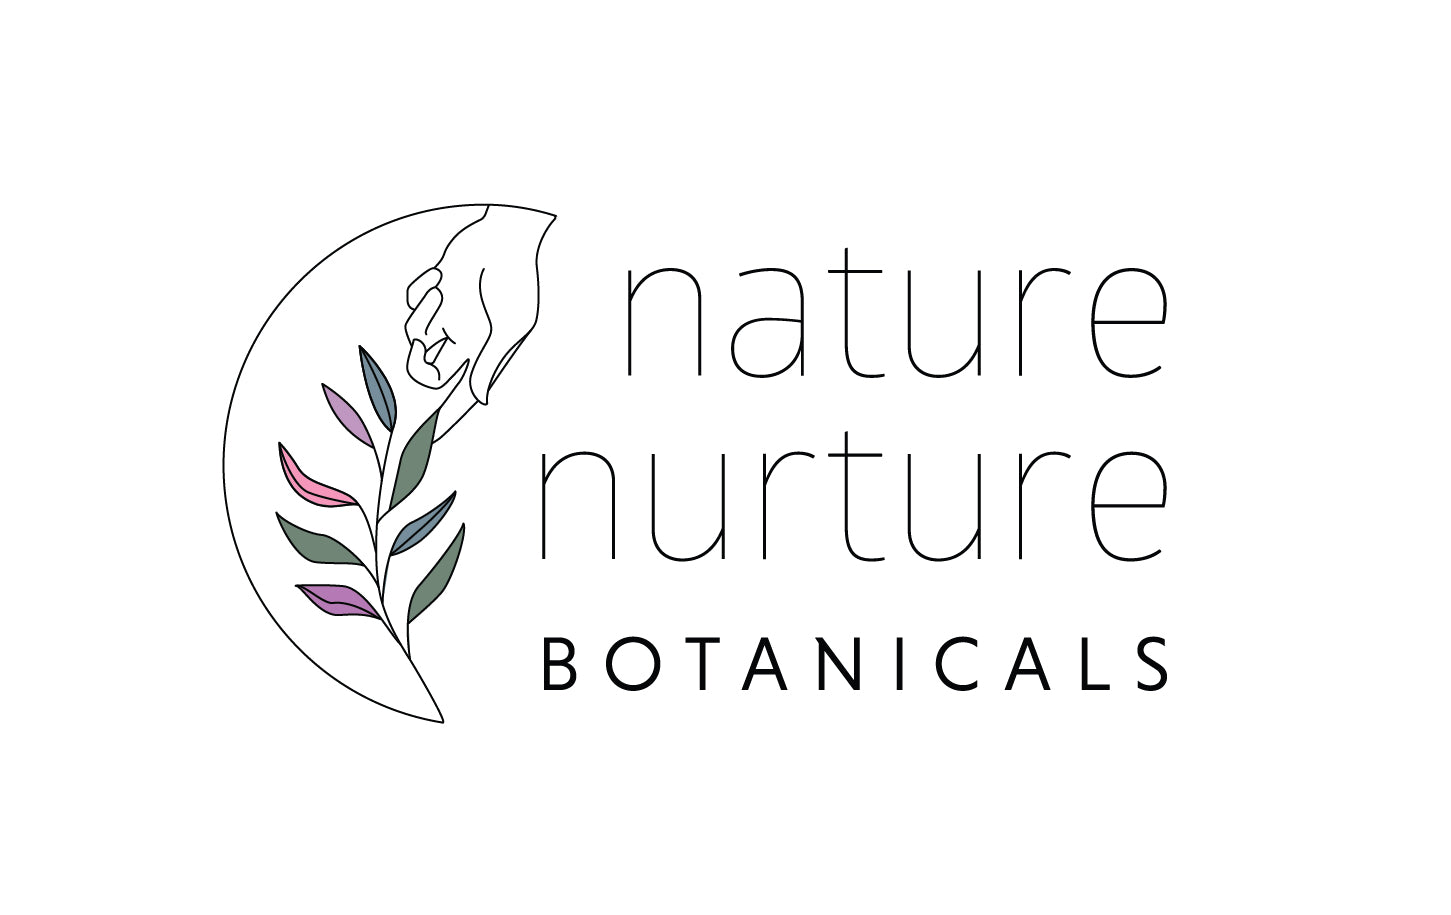 Nurture Nature Stickers – Birdsong Orchards